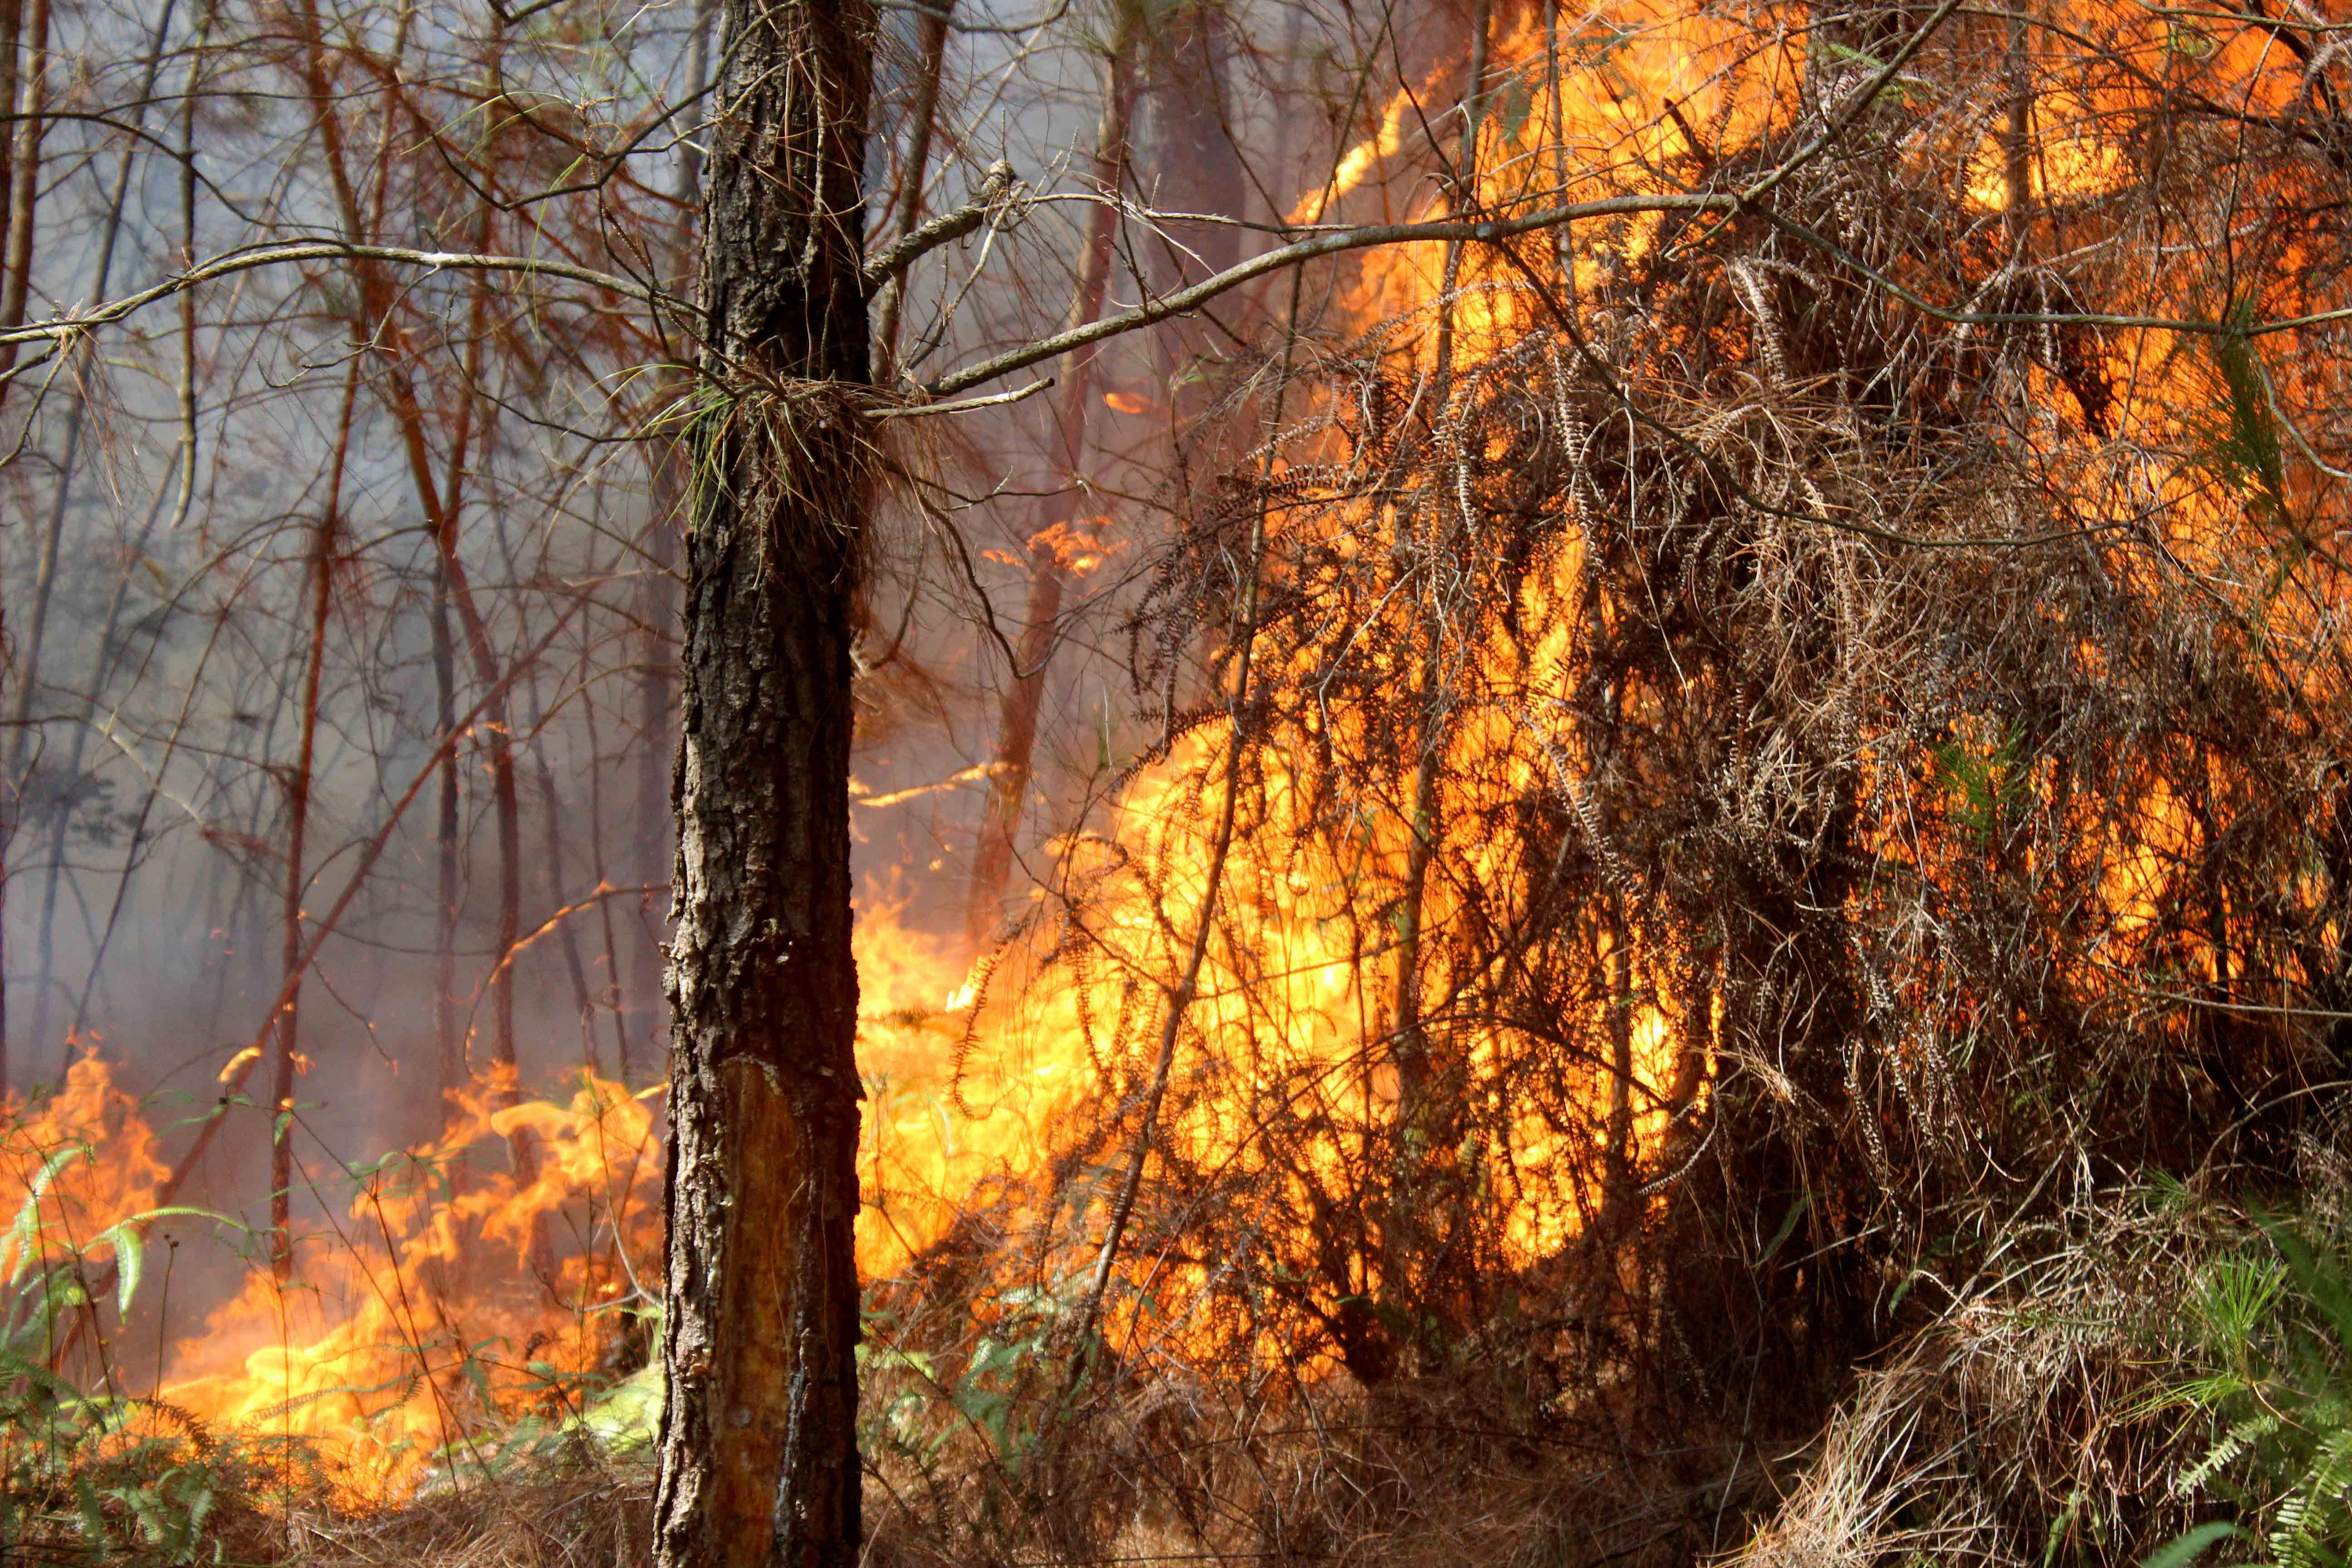 Lớp thực bì dày, cành lá khô là một trong những nguyên nhân chính dẫn tới việc cháy rừng bùng phát mạnh, lan rộng trong những năm qua. Ảnh: Quang An